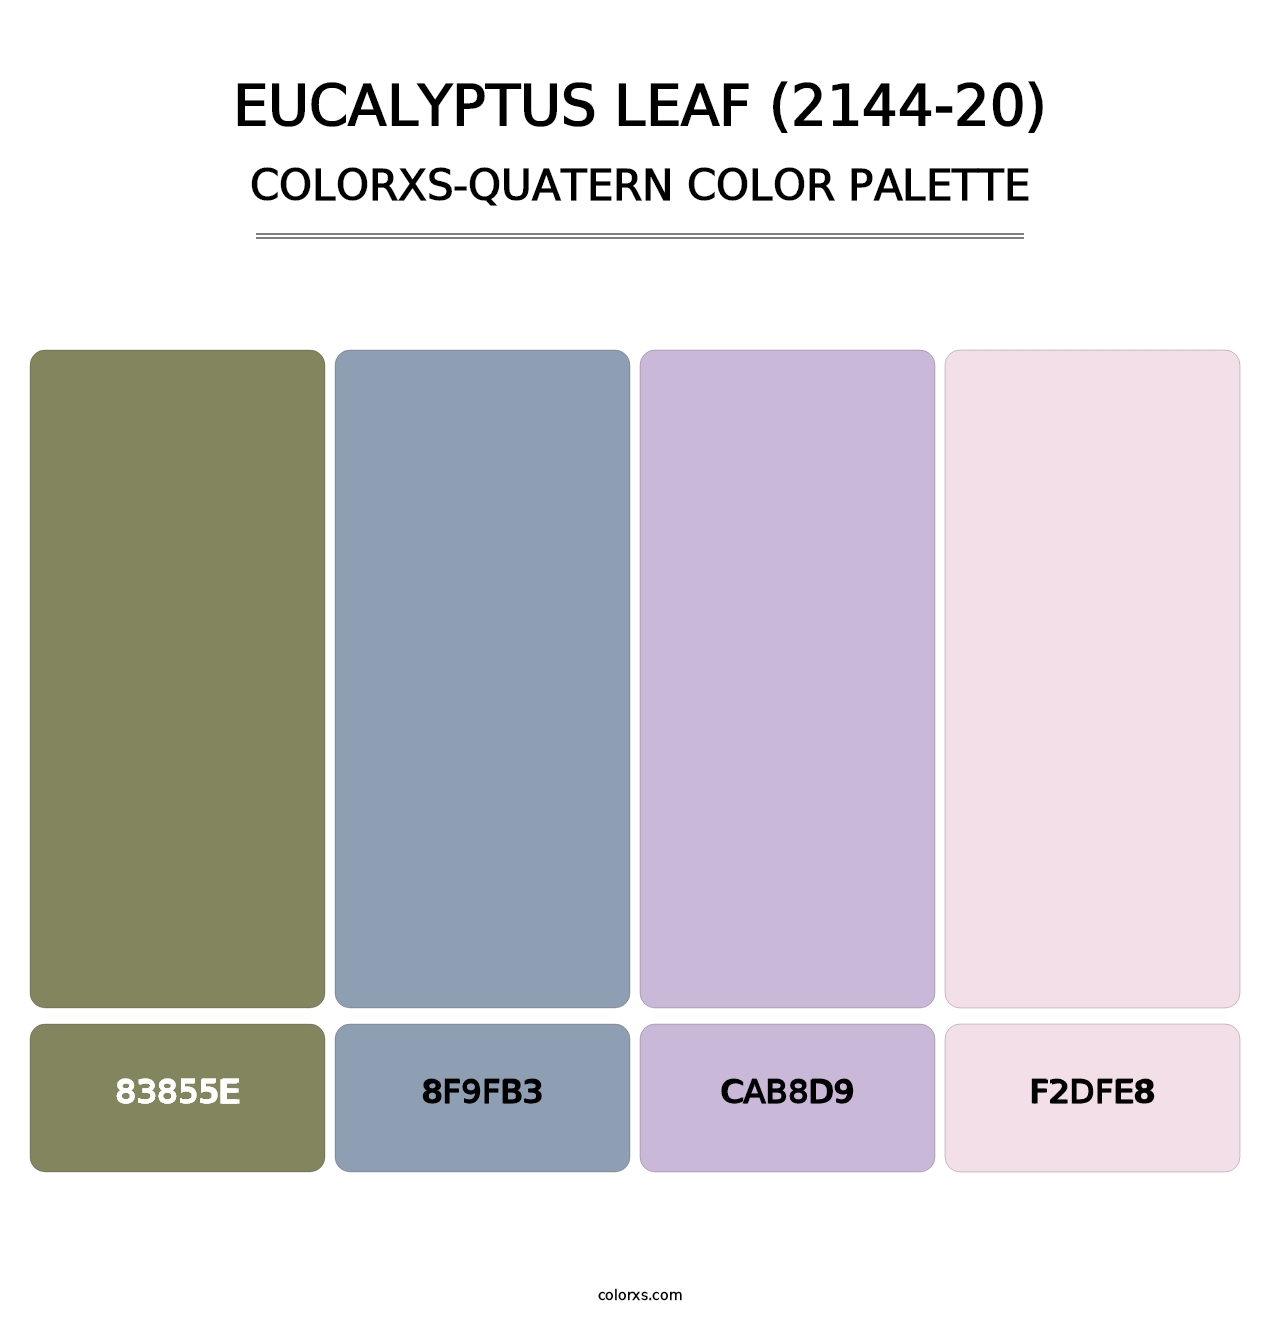 Eucalyptus Leaf (2144-20) - Colorxs Quatern Palette